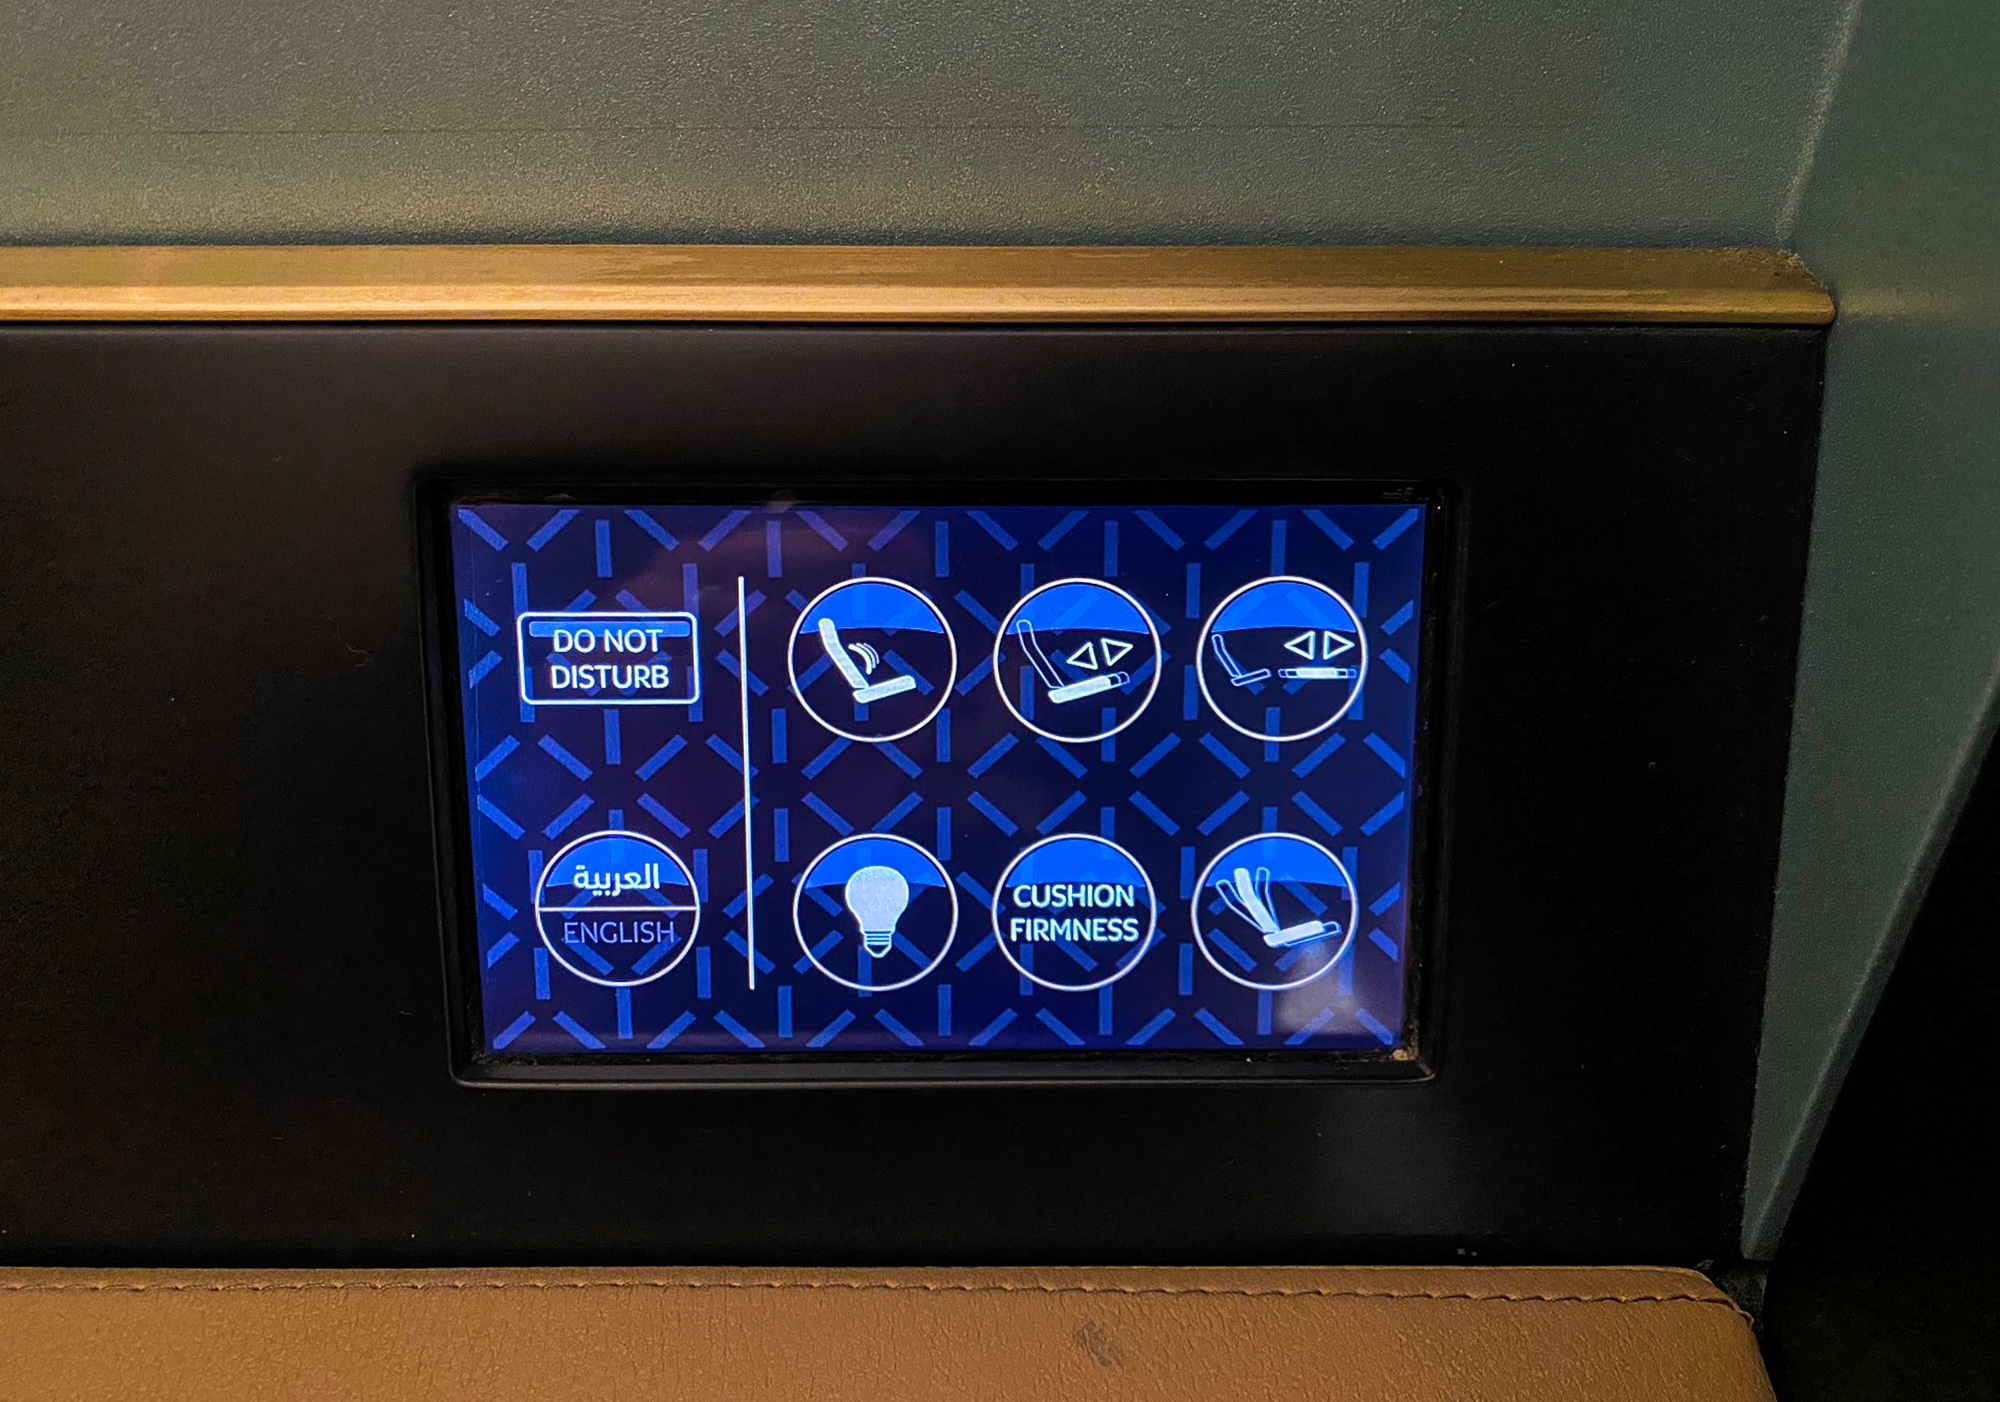 Etihad first class touchscreen controls